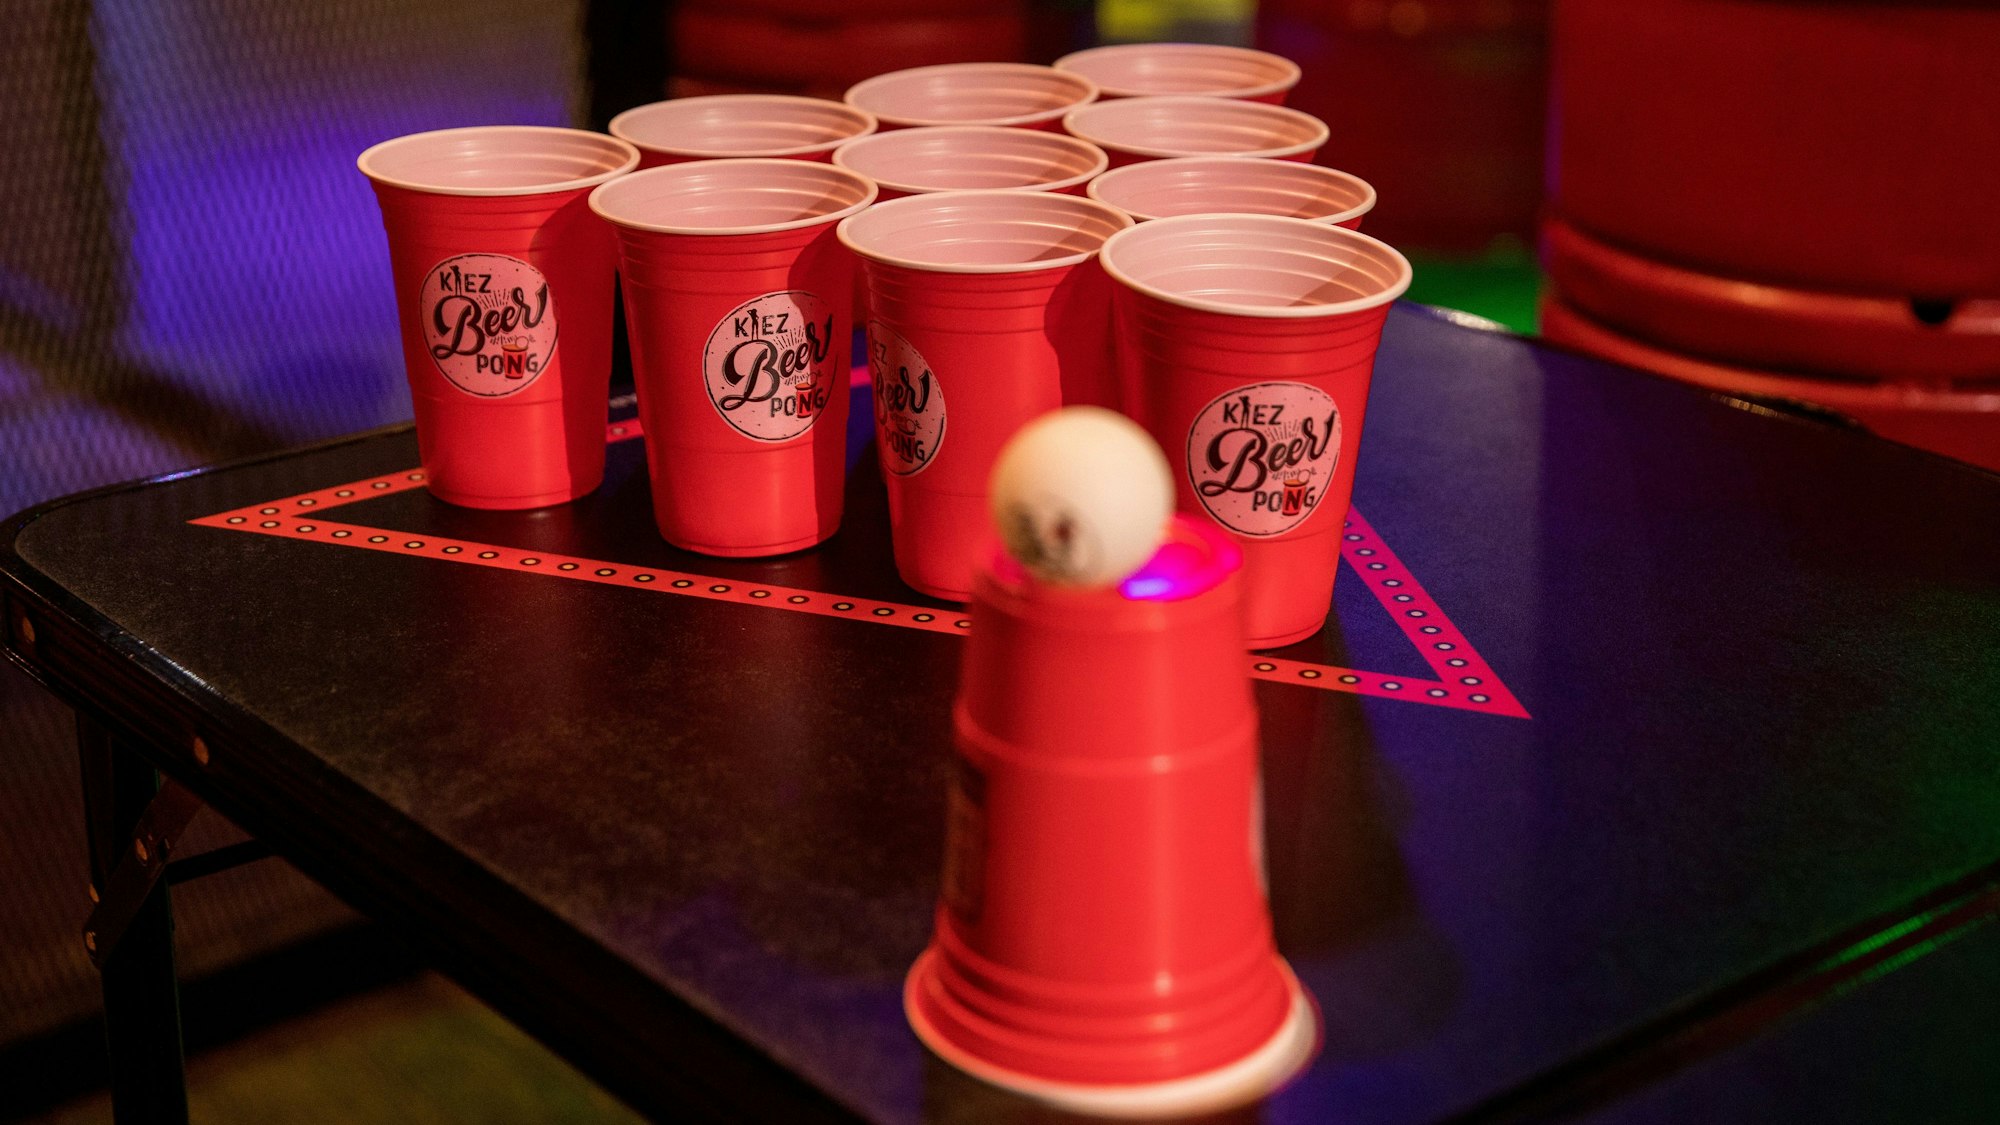 Rote Becher auf einem Tisch, dazu ein Tischtennisball, das Set für das Spiel Beerpong.